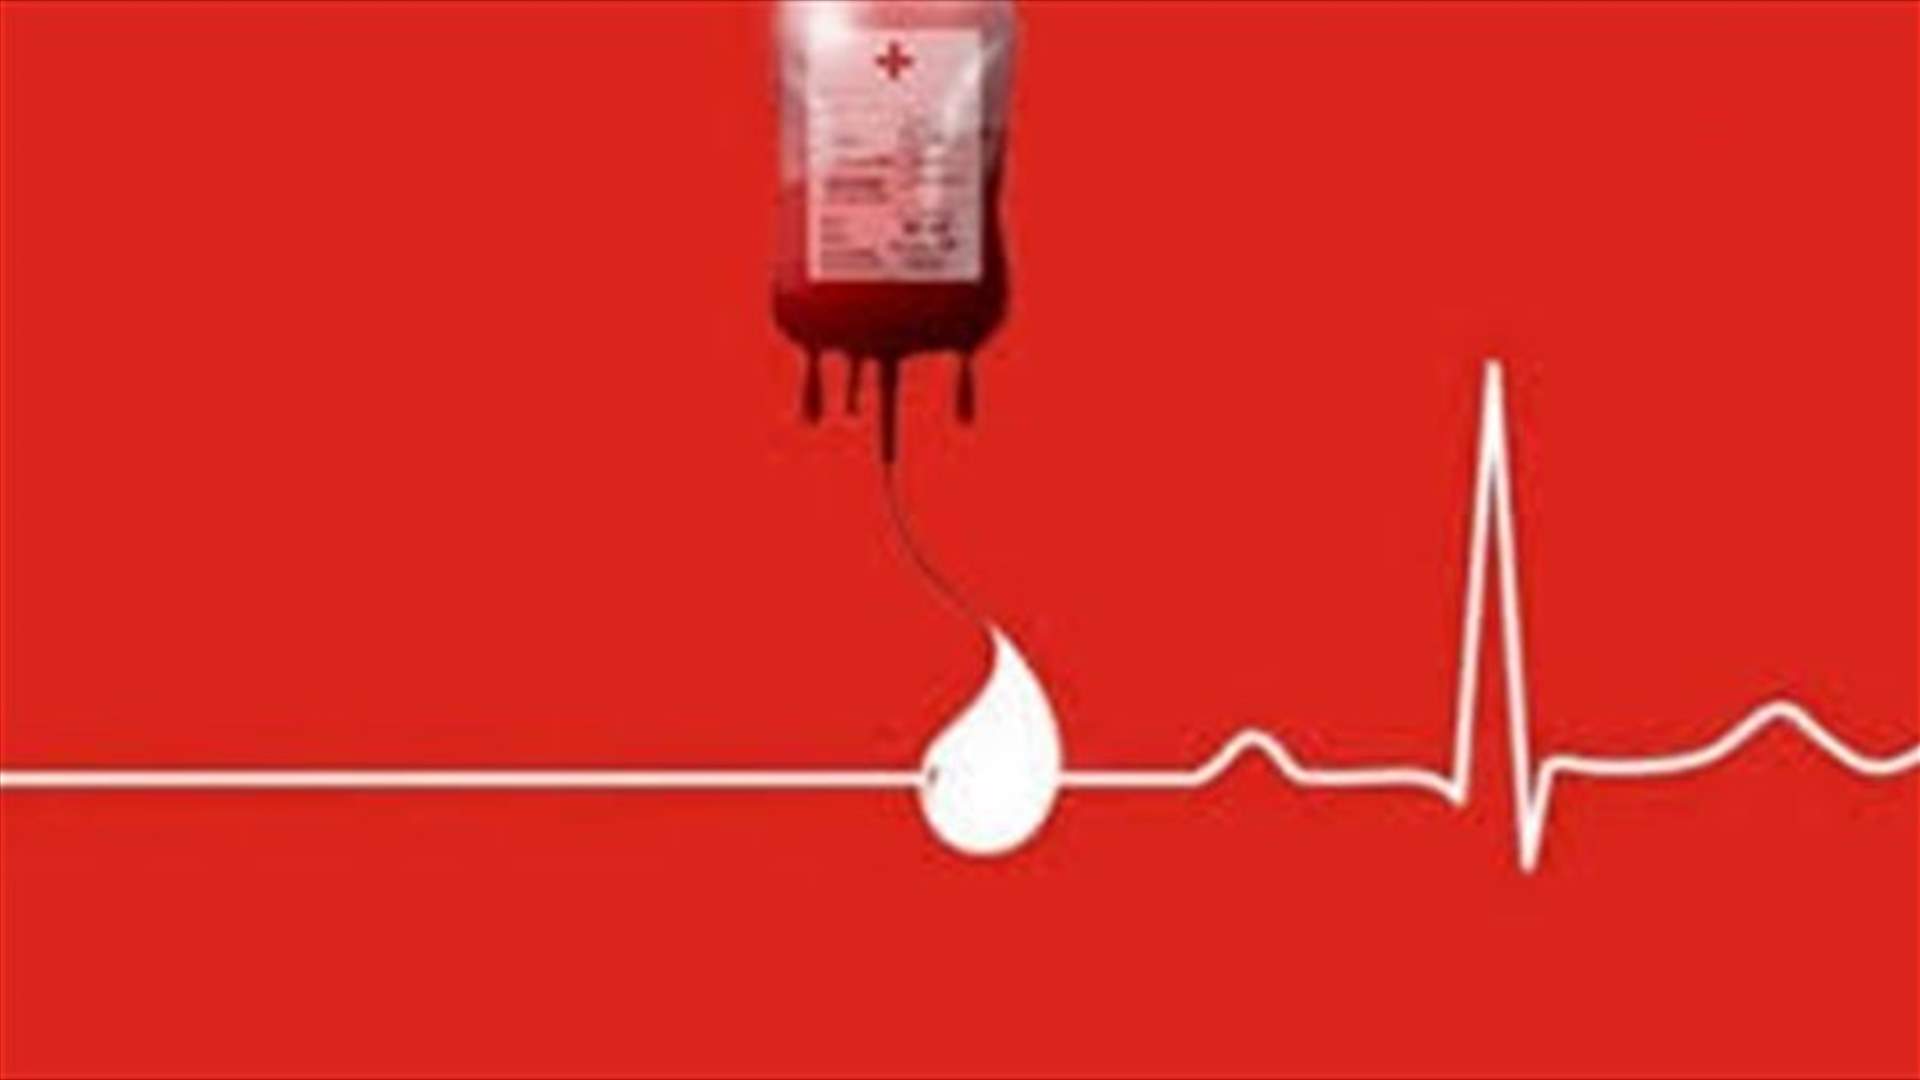 مريضة بحاجة ماسة الى وحدات دم من فئة O+ في مستشفى الجعيتاوي - الاشرفية.. للتبرع الرجاء الاتصال على الرقم التالي: ٧٠١٨٩٦٠٧